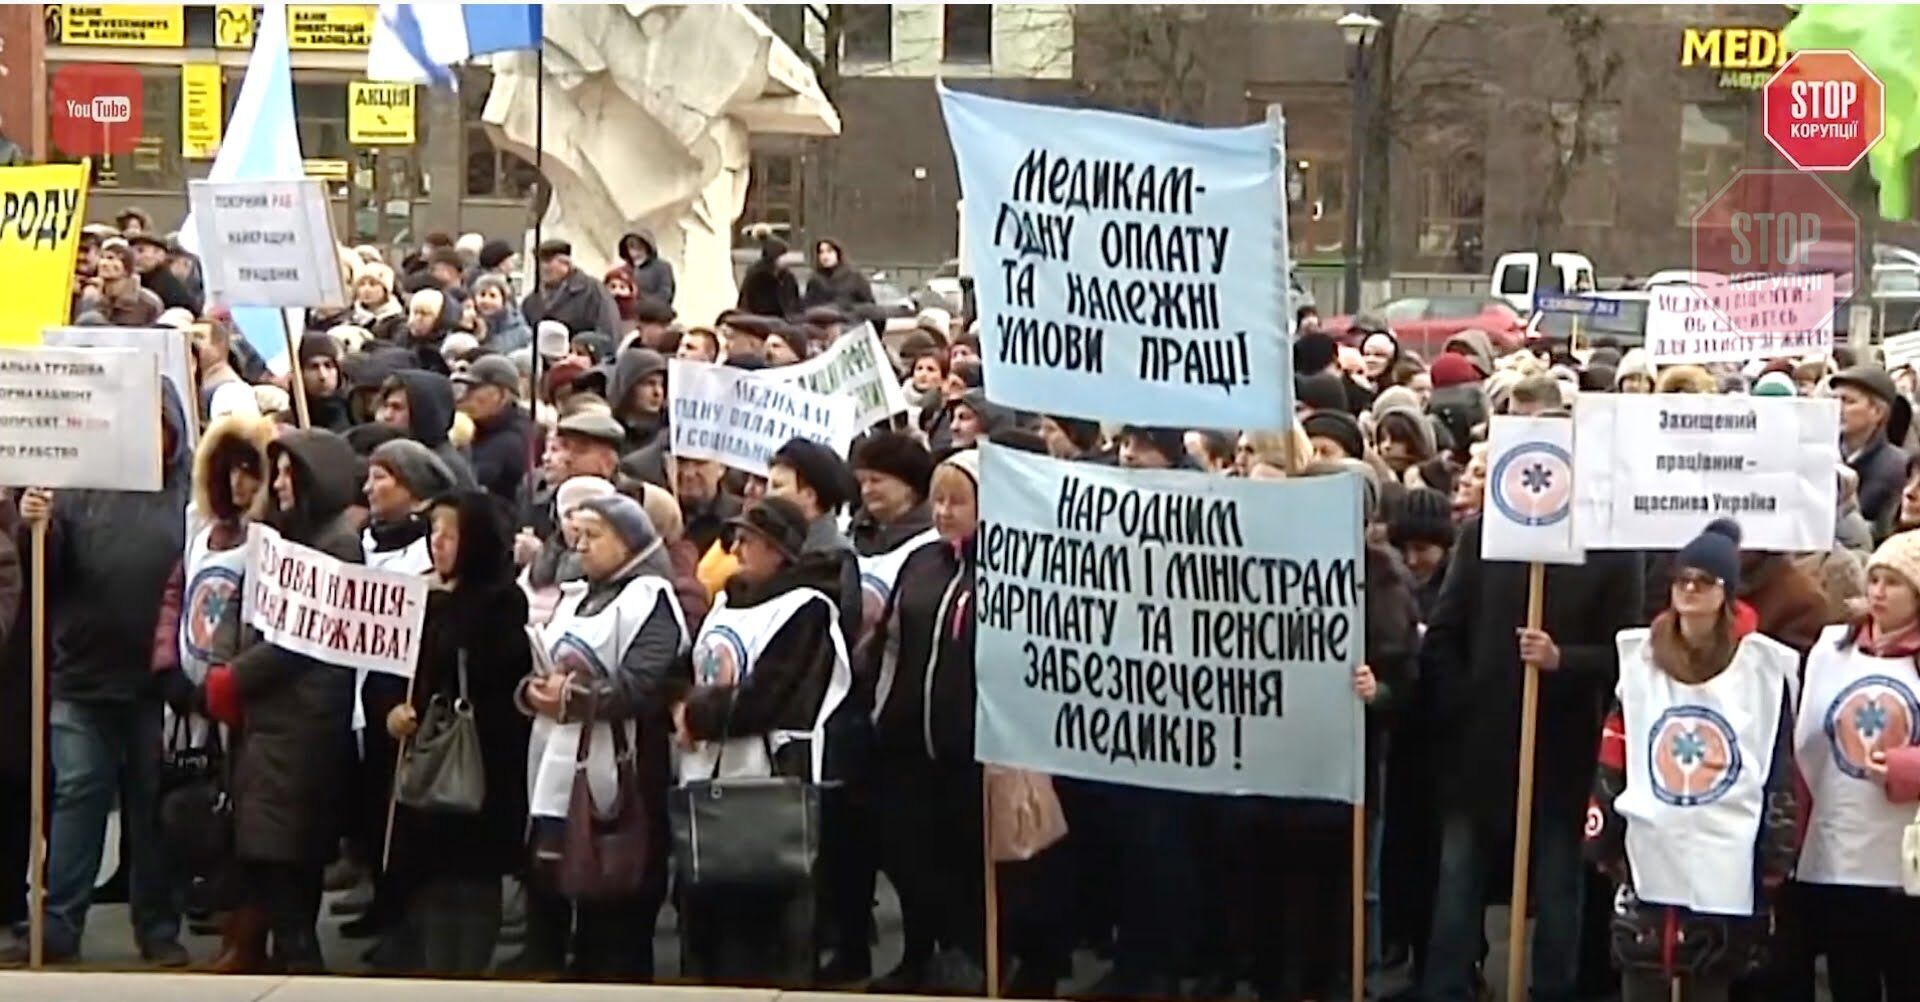  У низці українських міст відбулись протести проти ухвалення законопроєктів про працю